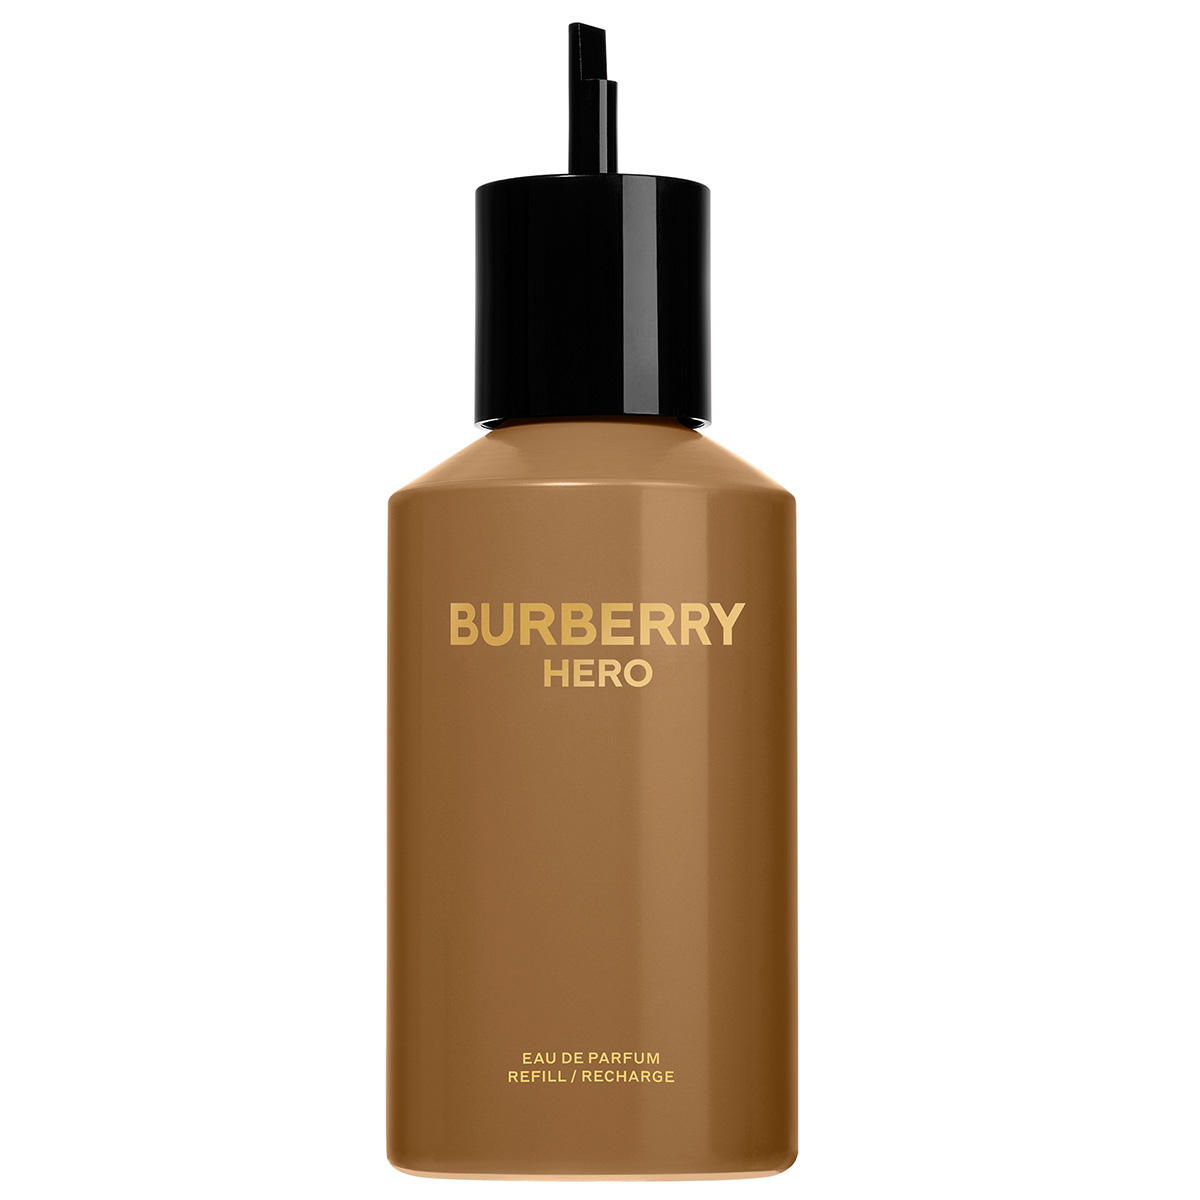 BURBERRY HERO Eau de Parfum Refill 200 ml - 1